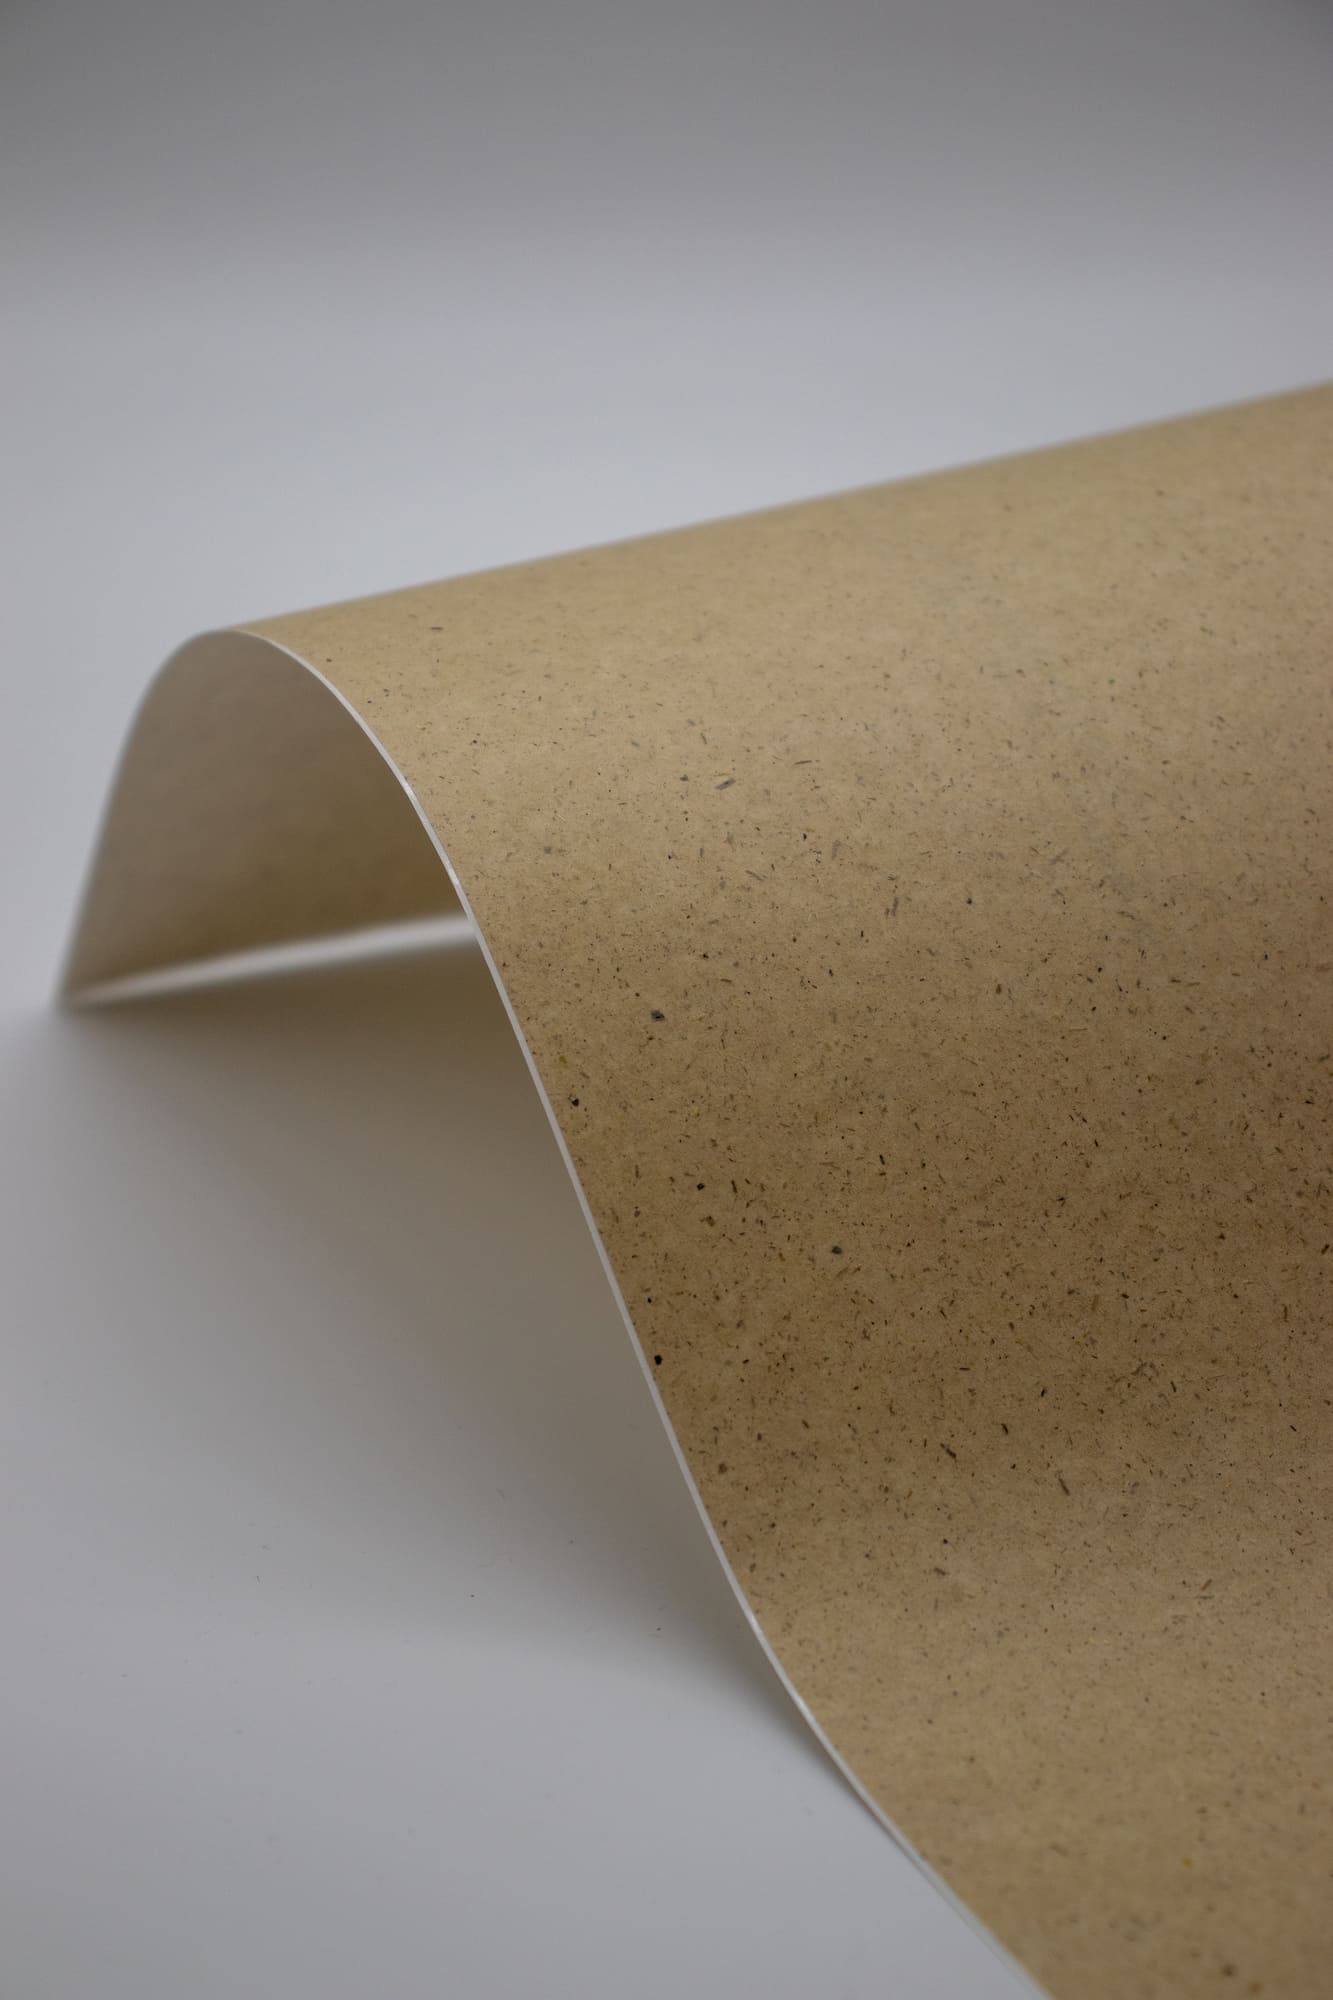 ENDI-HAFT Graspapier Etiketten, oval 63,5x42,3 mm auf DIN A4 Bögen